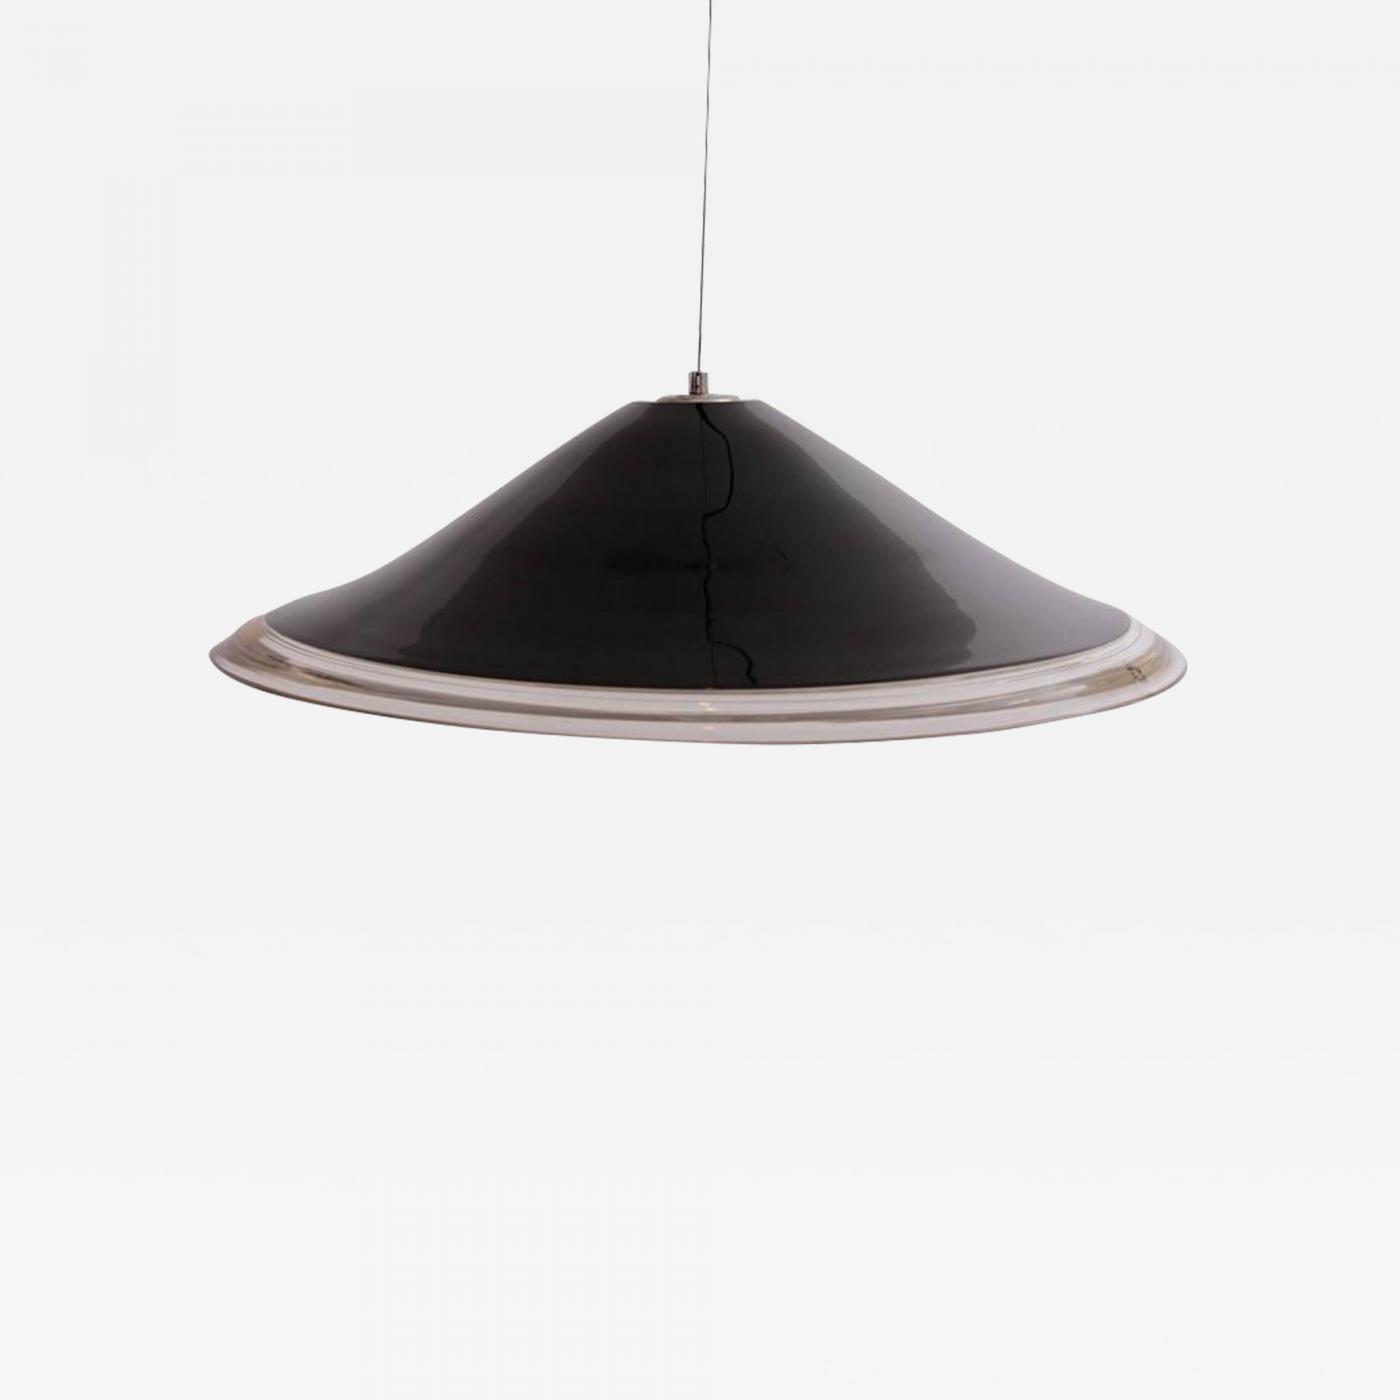 Renato Toso - Huge Melania Pendant Lamp by Renato Toso for Leucos in Murano  Black and White